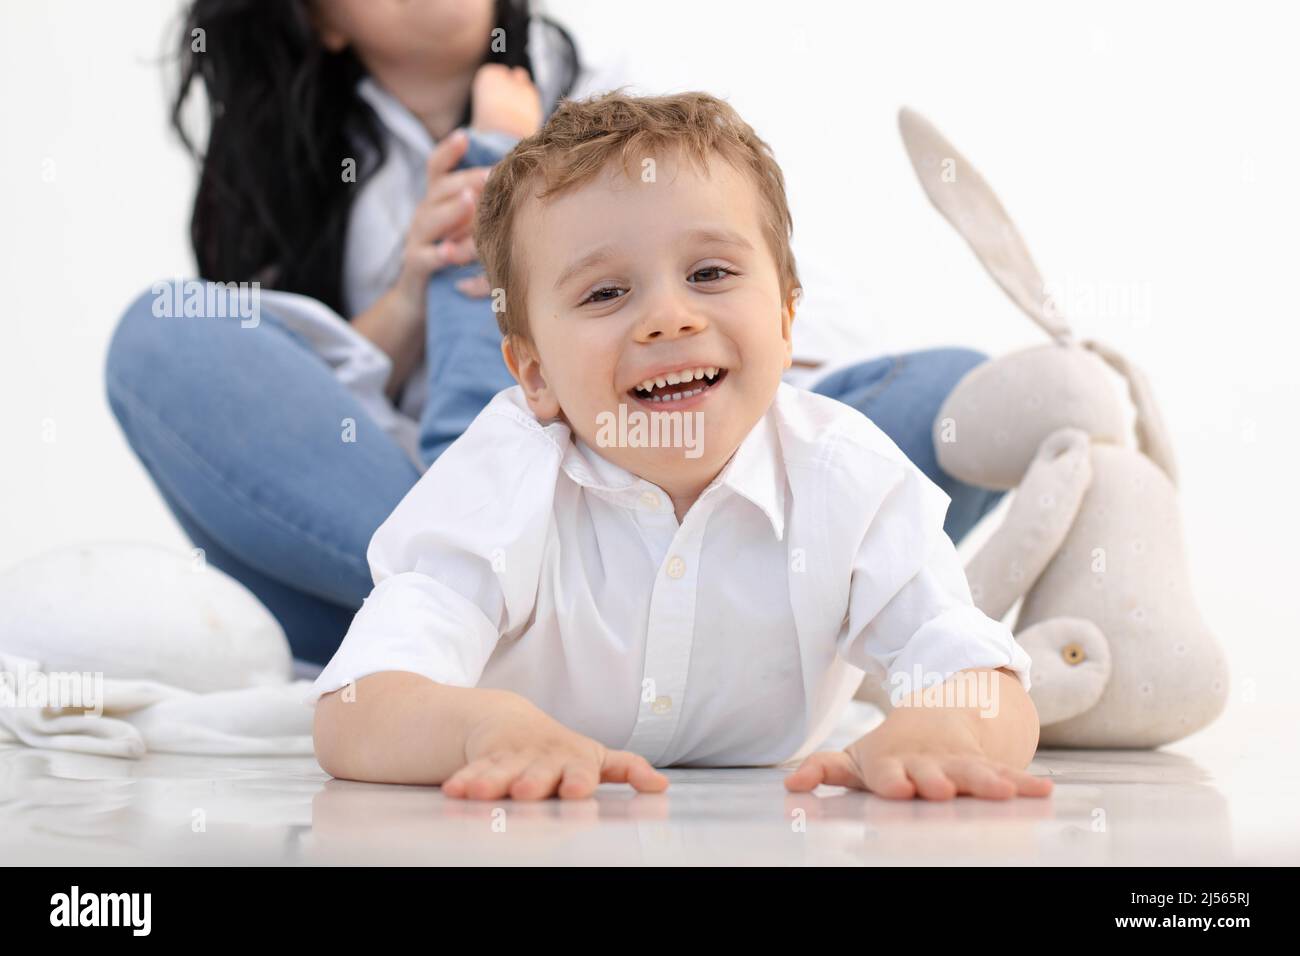 Foto eines kleinen, hellhaarigen Jungen, der auf dem Boden liegt, in der Nähe eines weichen Spielzeughasen. Blick auf die Kamera, spielt mit der Mutter zusammen Stockfoto